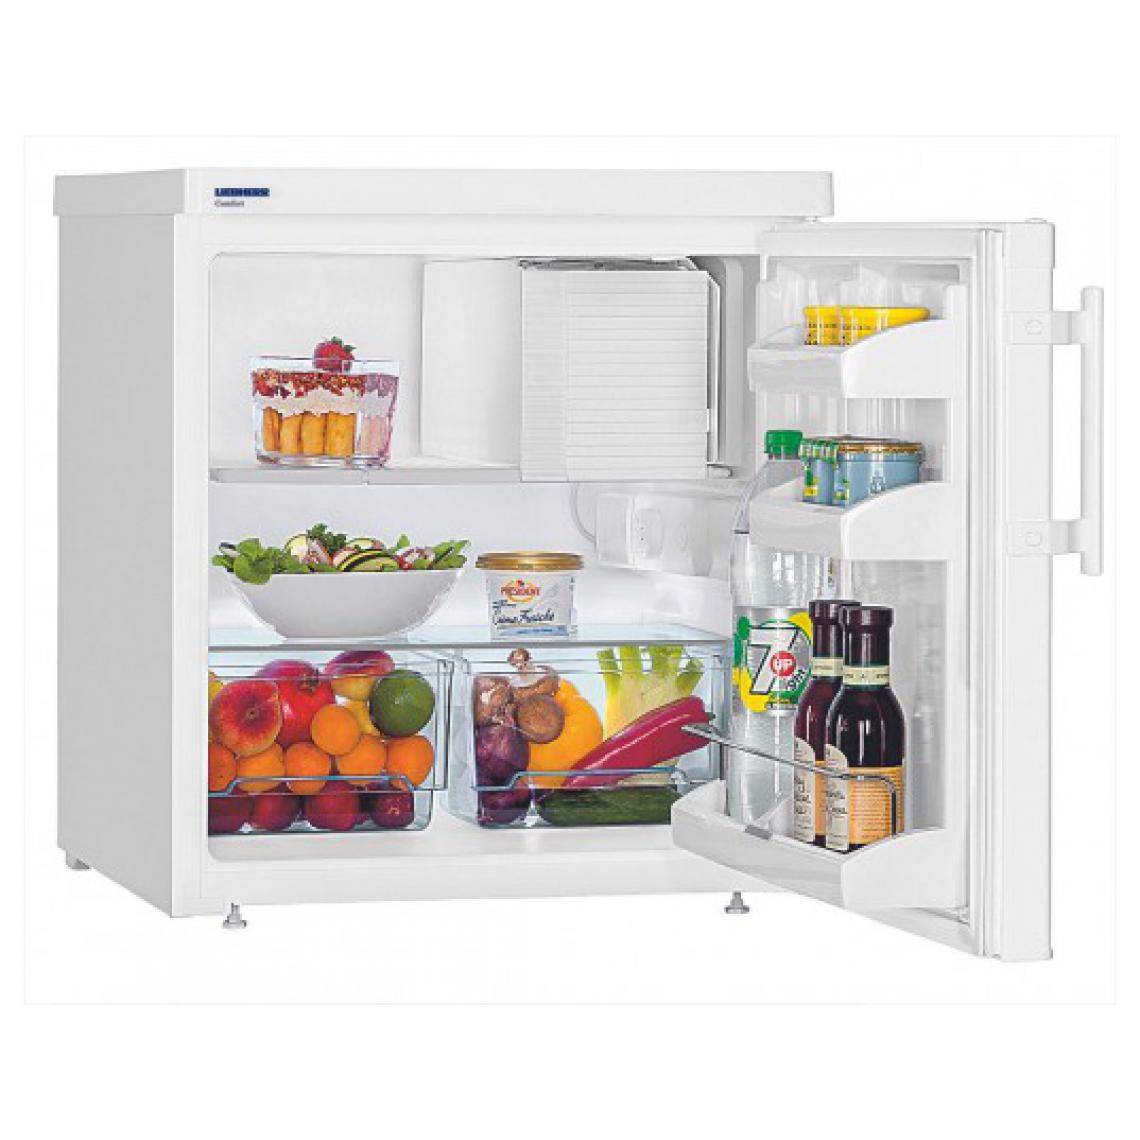 Liebherr - Table top TX 1021 -22 - Réfrigérateur